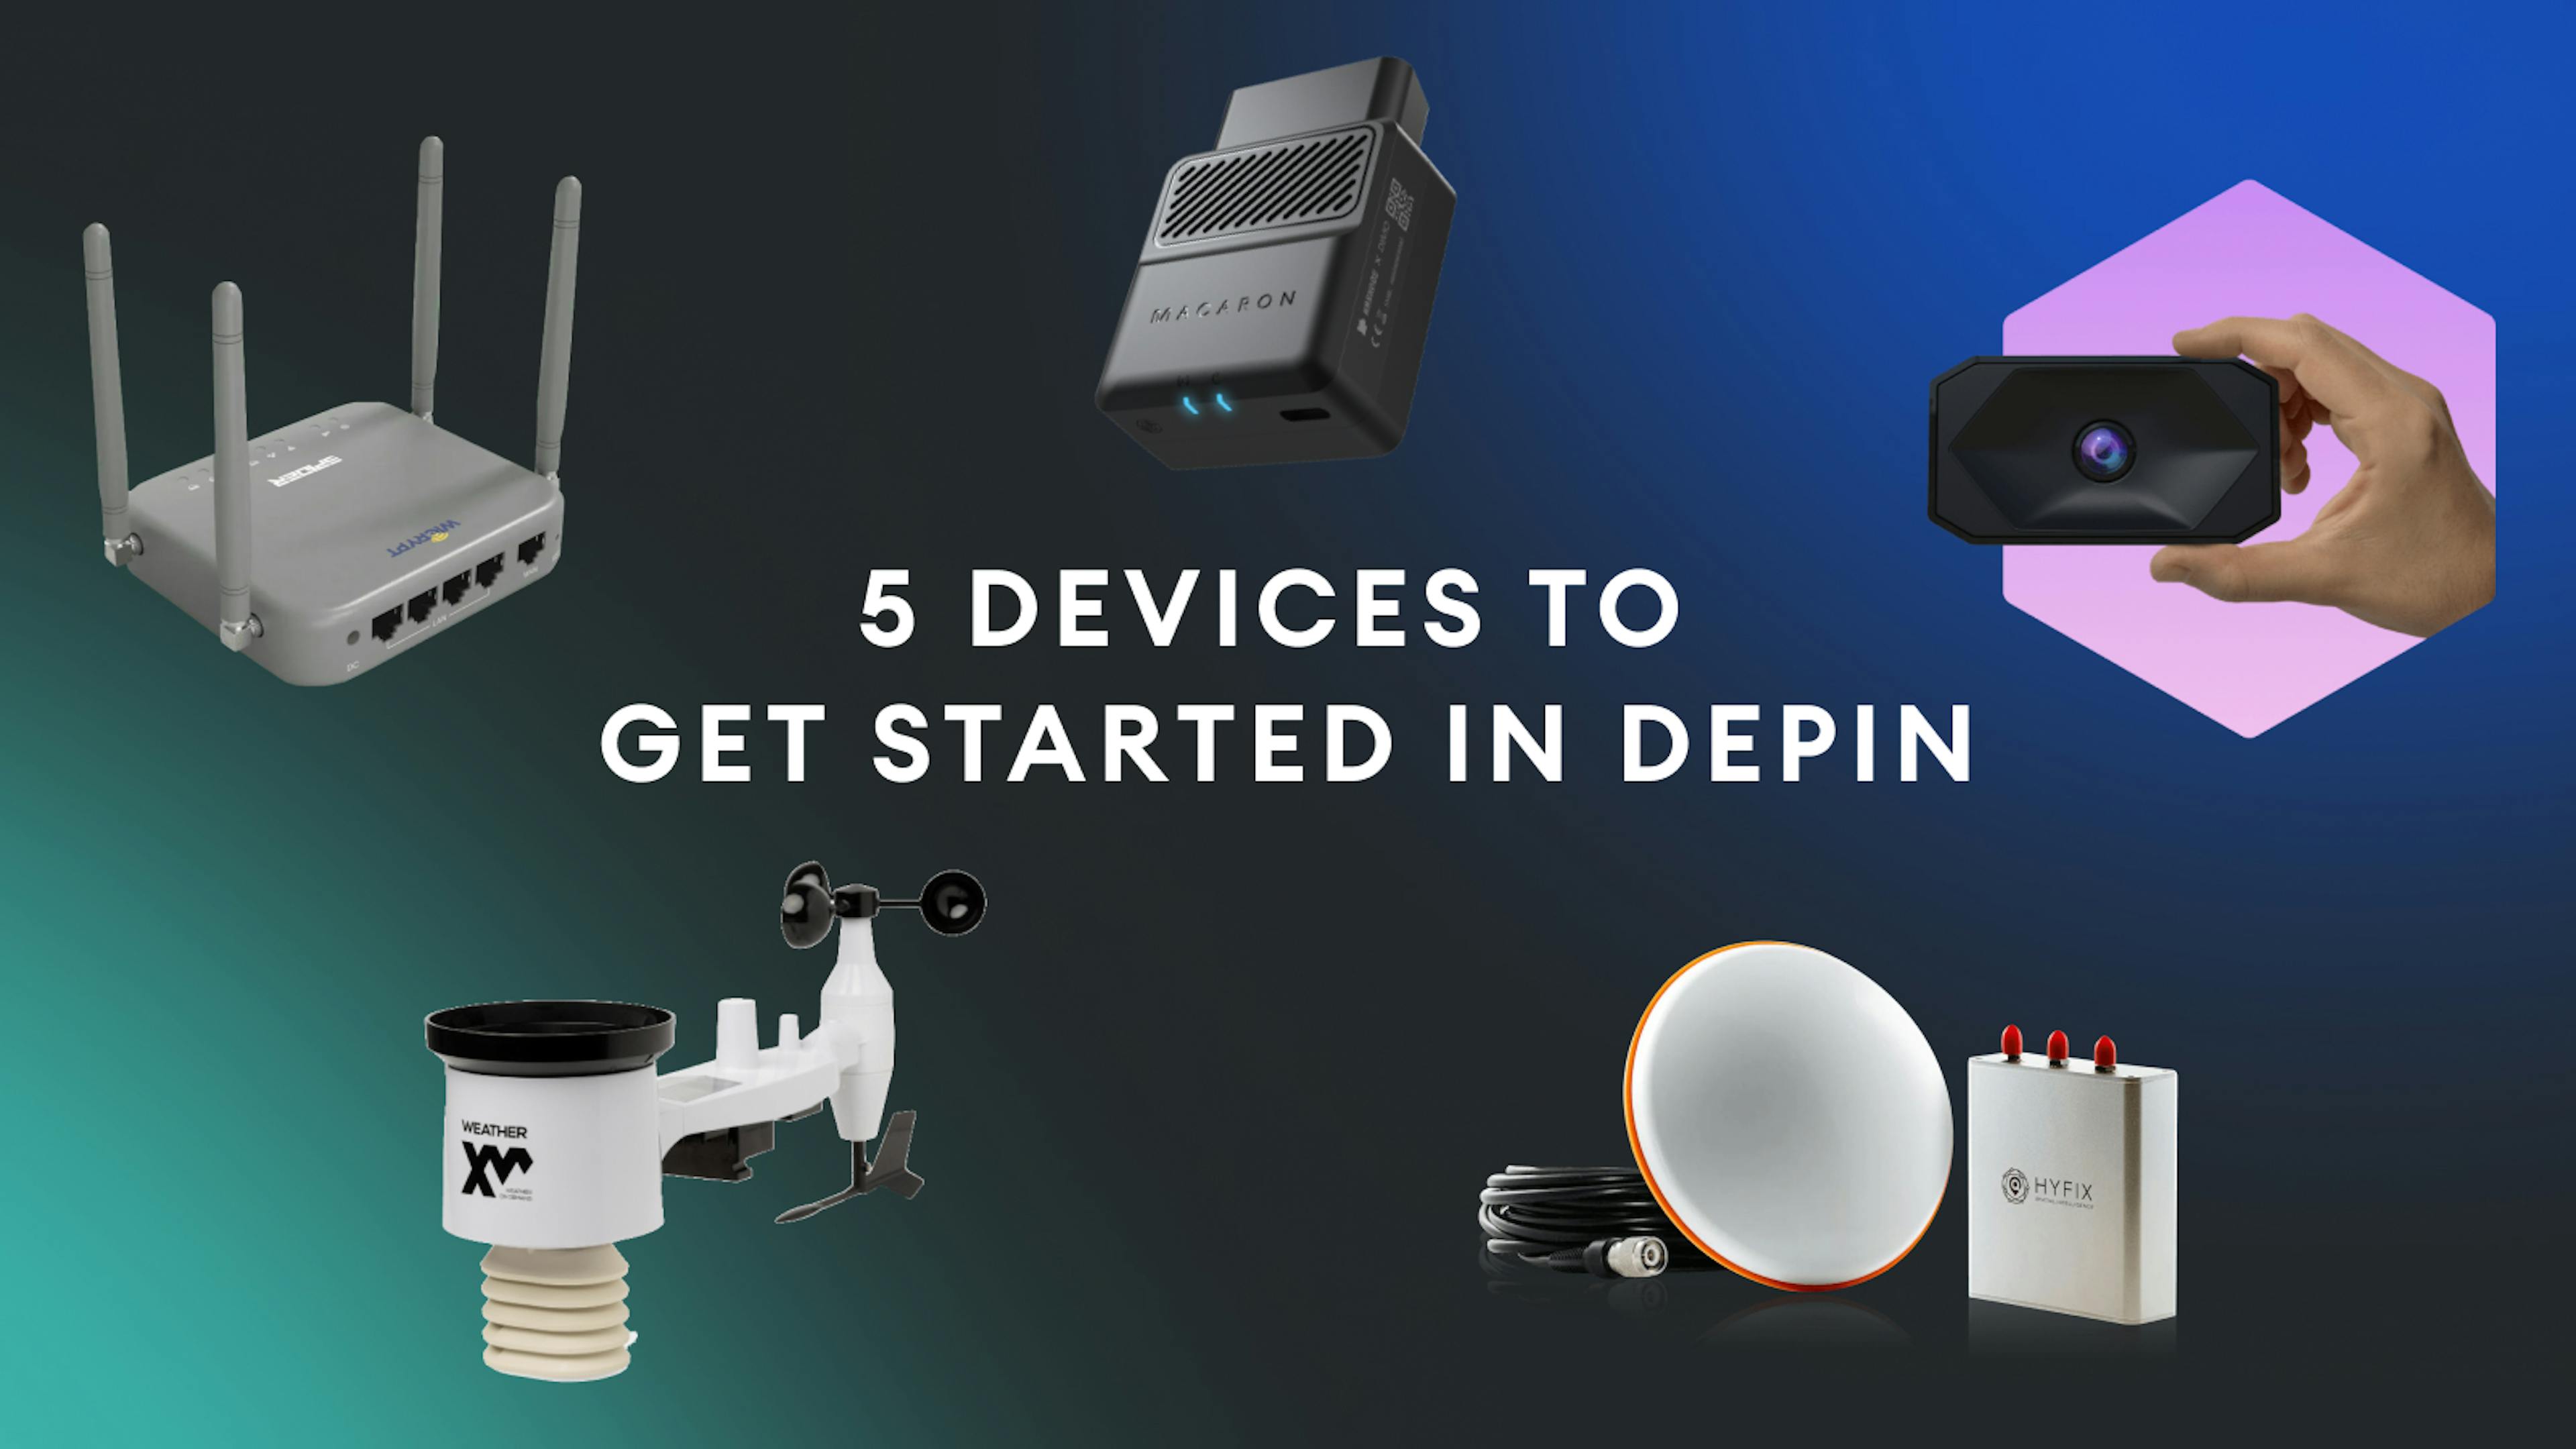 featured image - 5 thiết bị để bắt đầu sử dụng DePIN